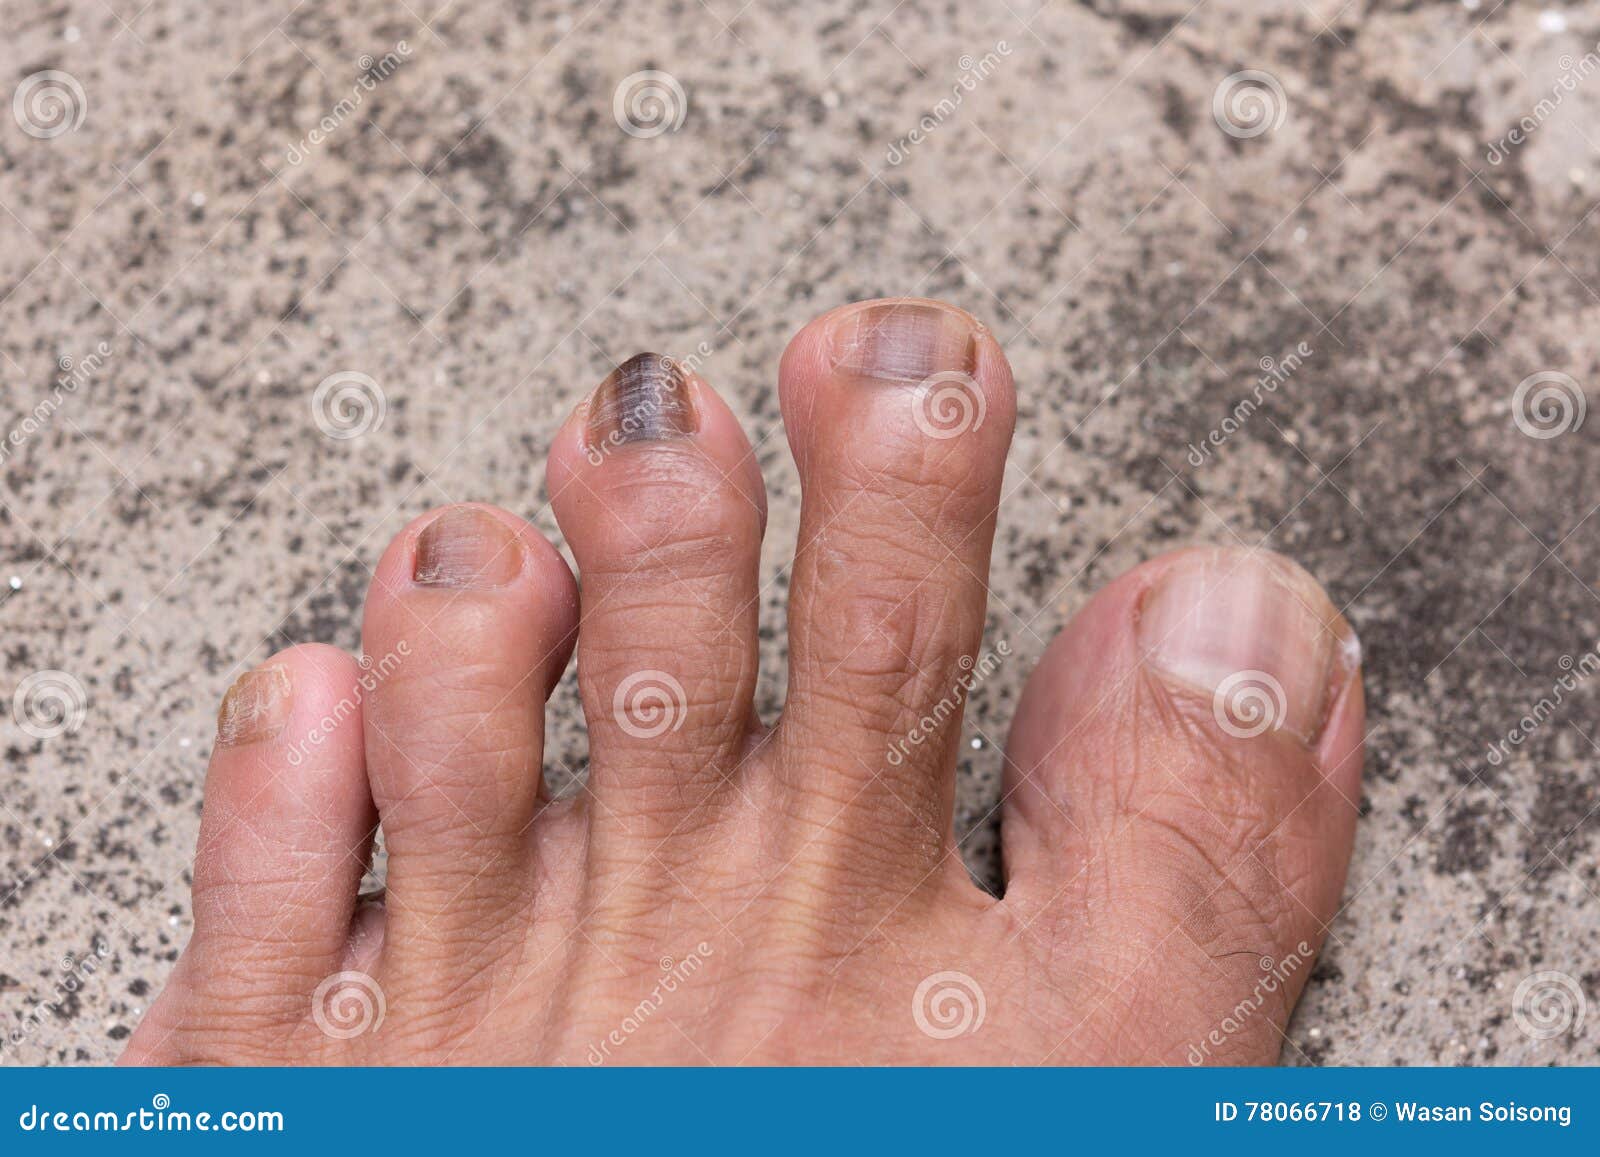 因为儿童` S异常的钉子可能告诉疾病的症状医生检查患者` S脚趾钉子那个孩子 库存照片 - 图片 包括有 核对, 皮炎: 99443206